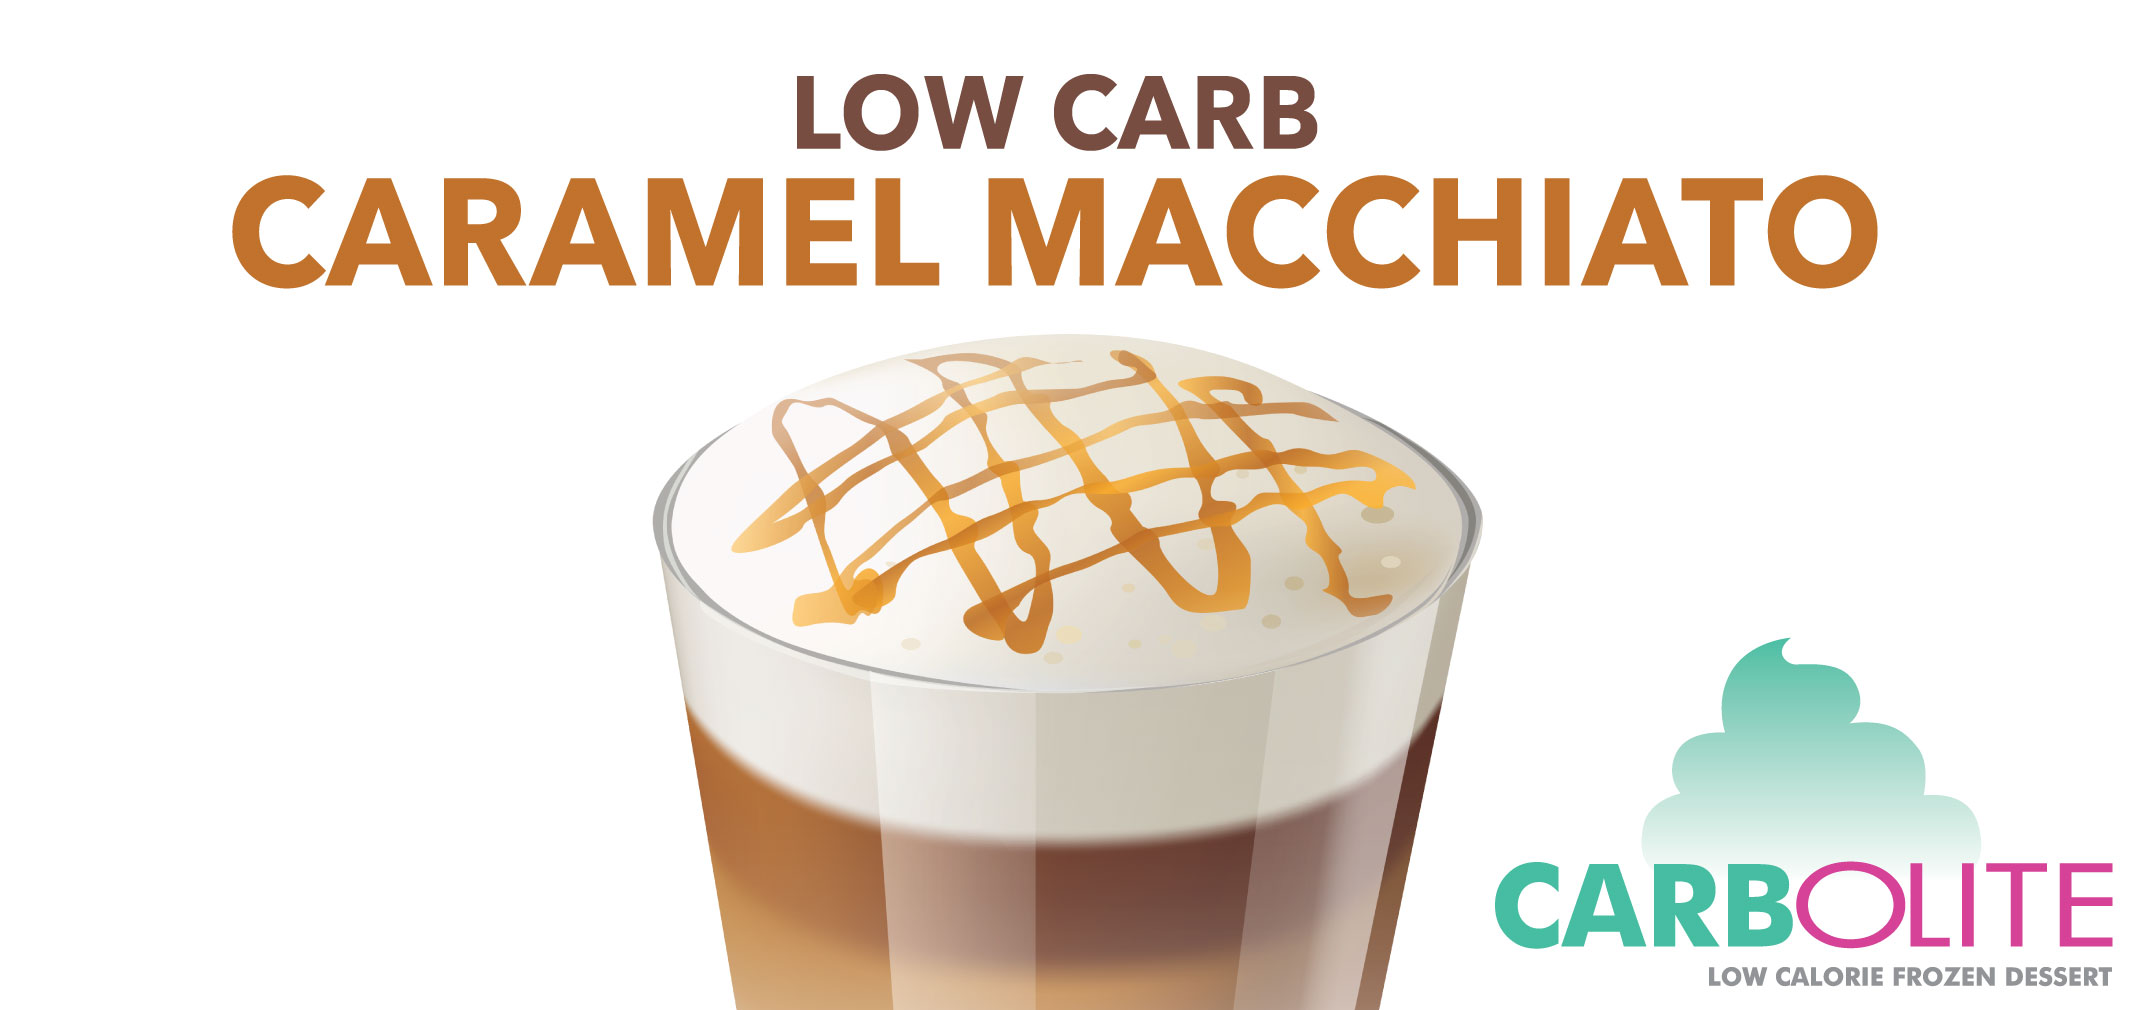 carbolite low carb caramel macchiato label image